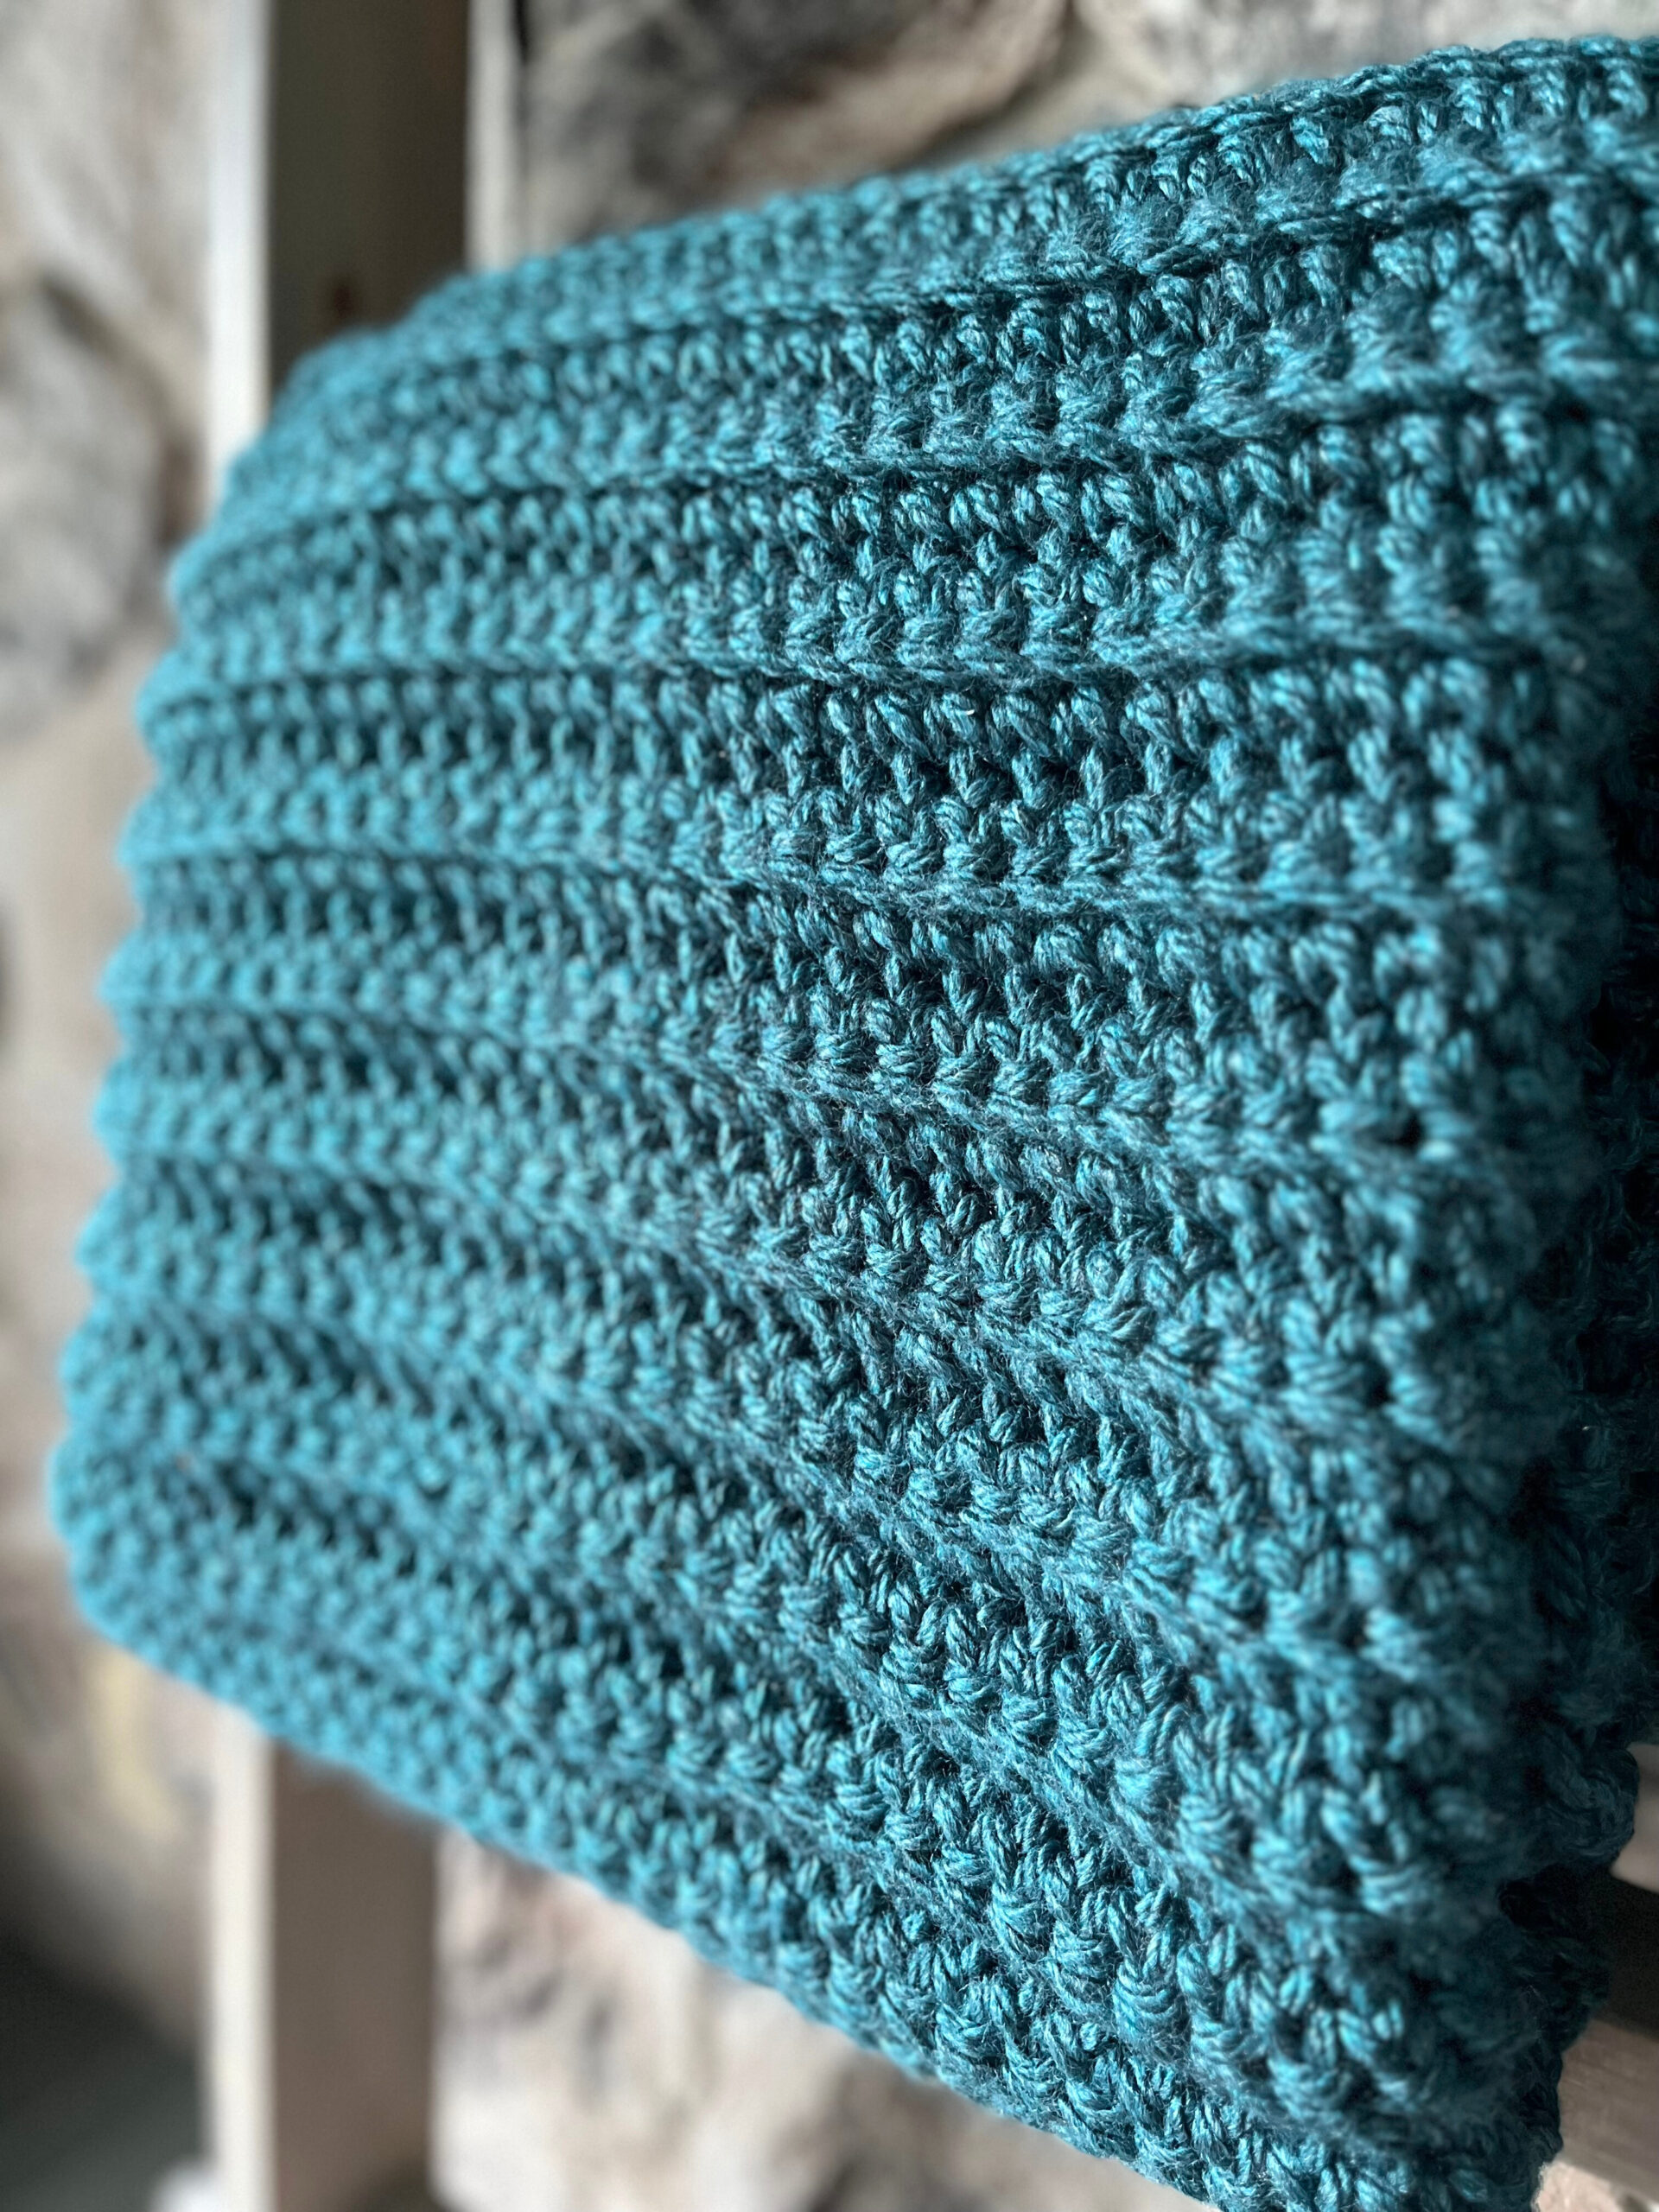 Fur Yarn Blanket Free Crochet Patterns - Your Crochet